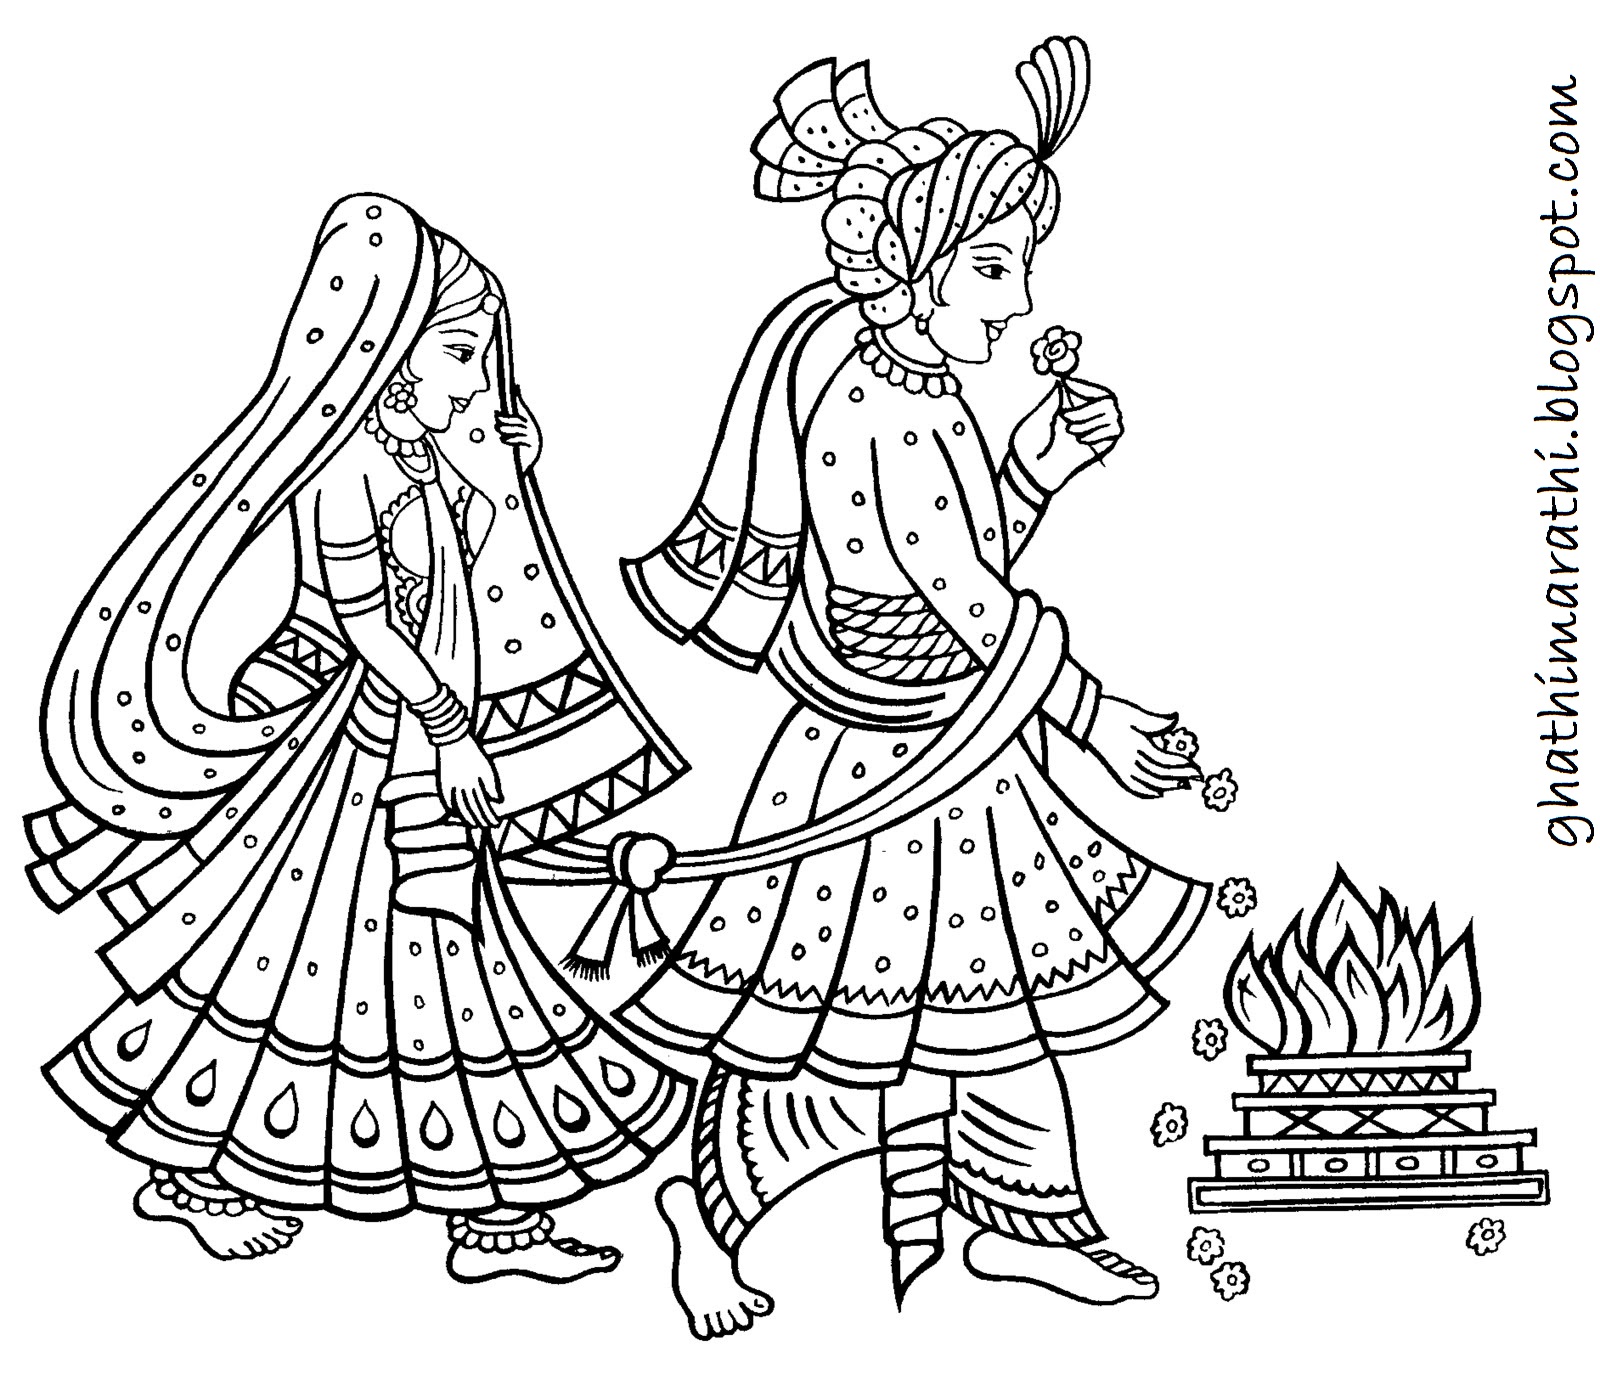 ghathimarathi: Designs of Marathi Lagna Patrika for Marathi Wedding